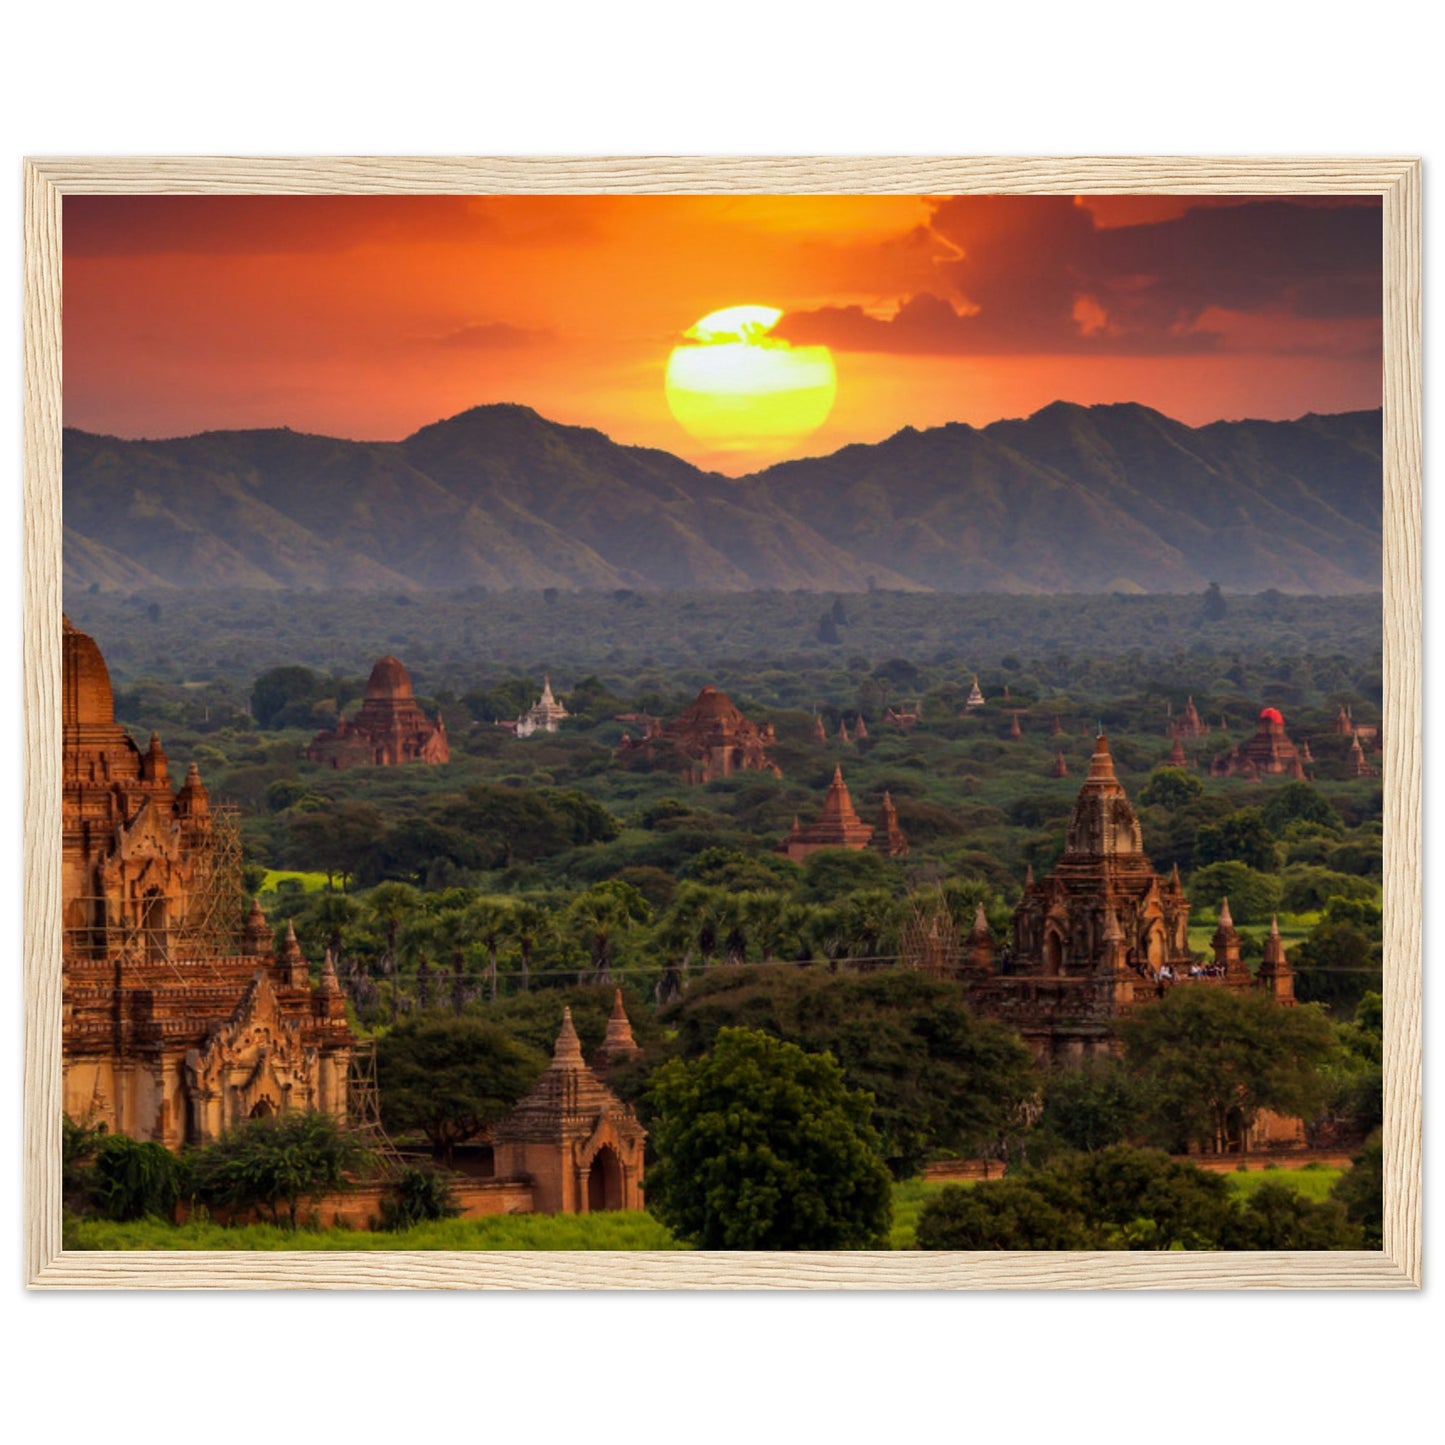 Myanmar tempels